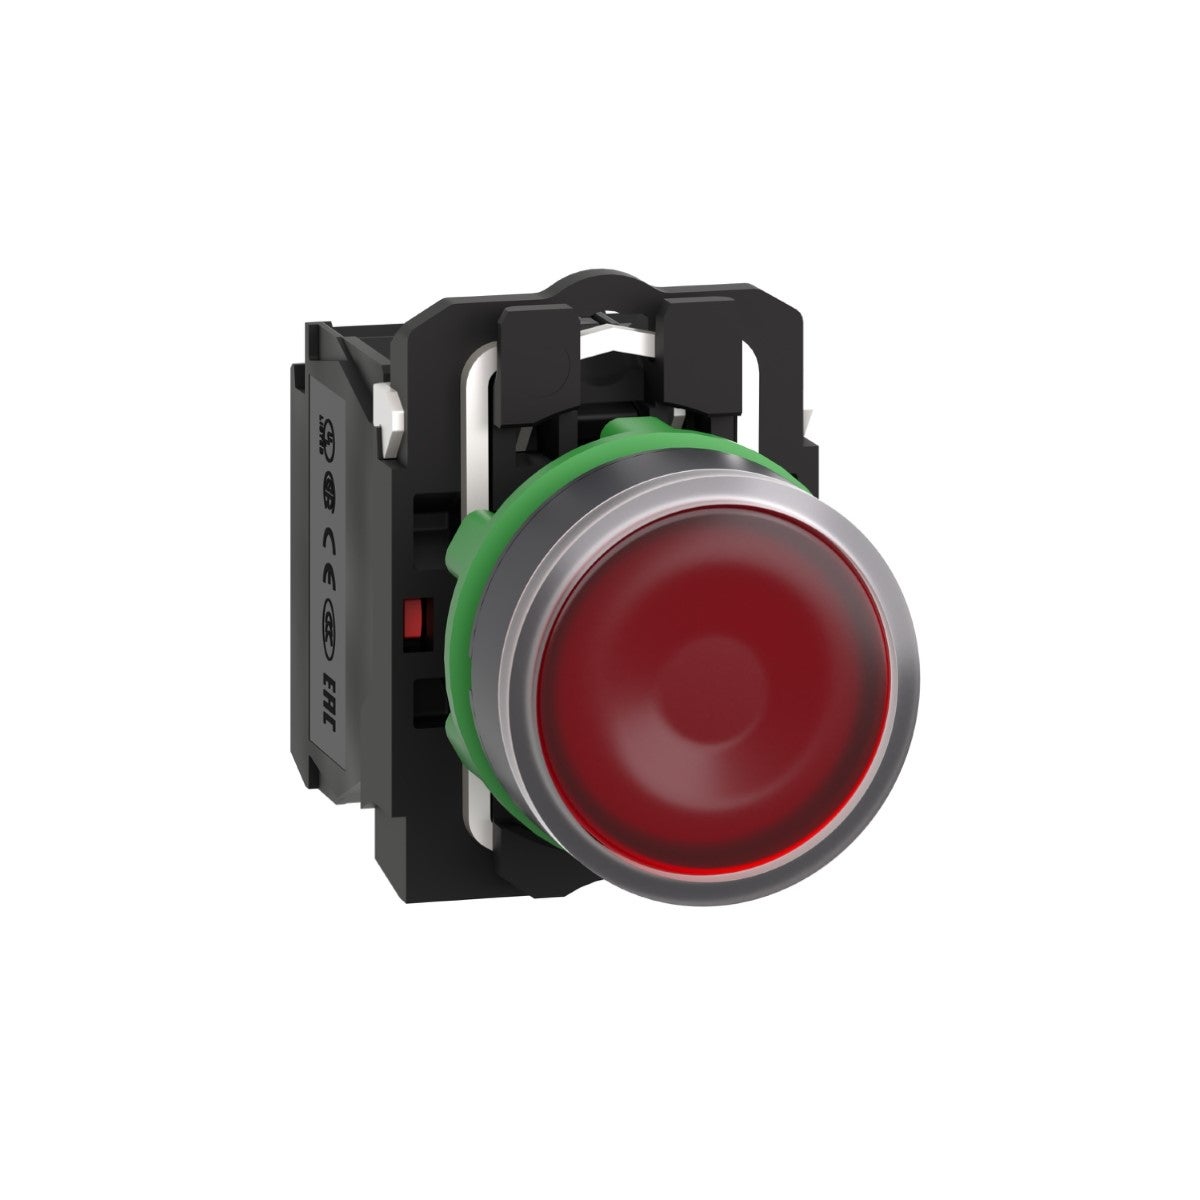 Illuminated push button, Harmony XB5, plastic, red flush, 22mm, universal LED, plain lens, 1NO + 1NC, 110...120V AC